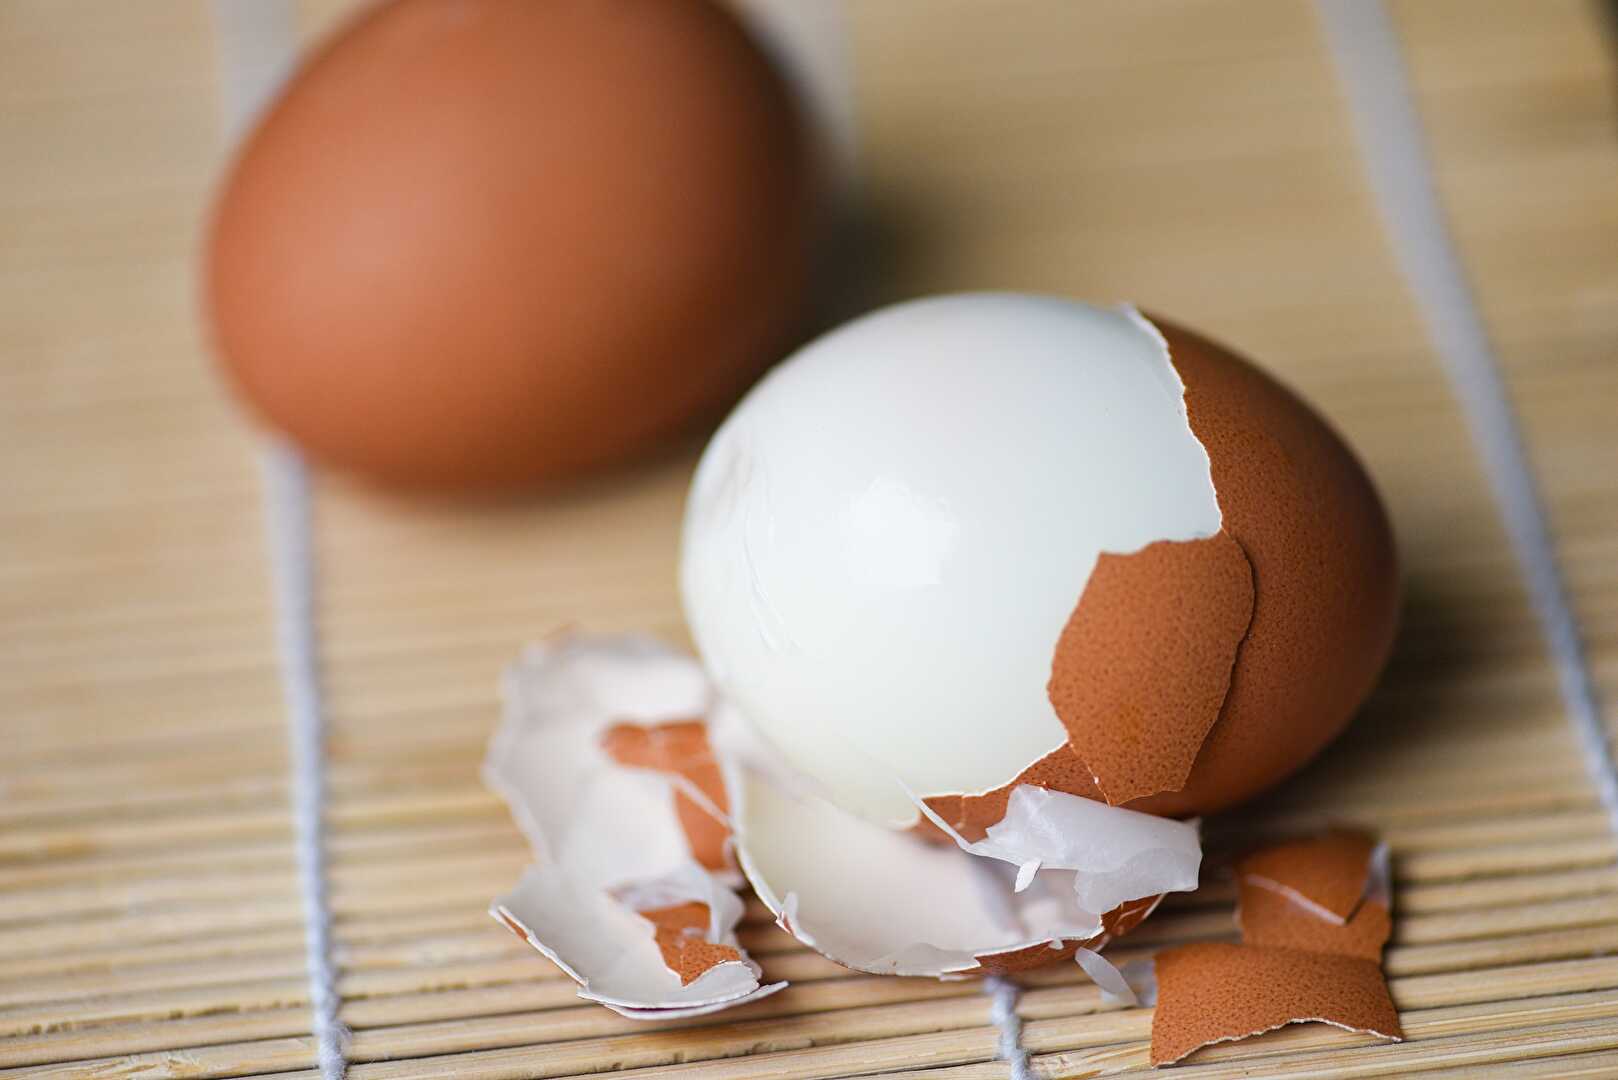 Les 4 techniques pour écaler un œuf dur de manière facile et efficace